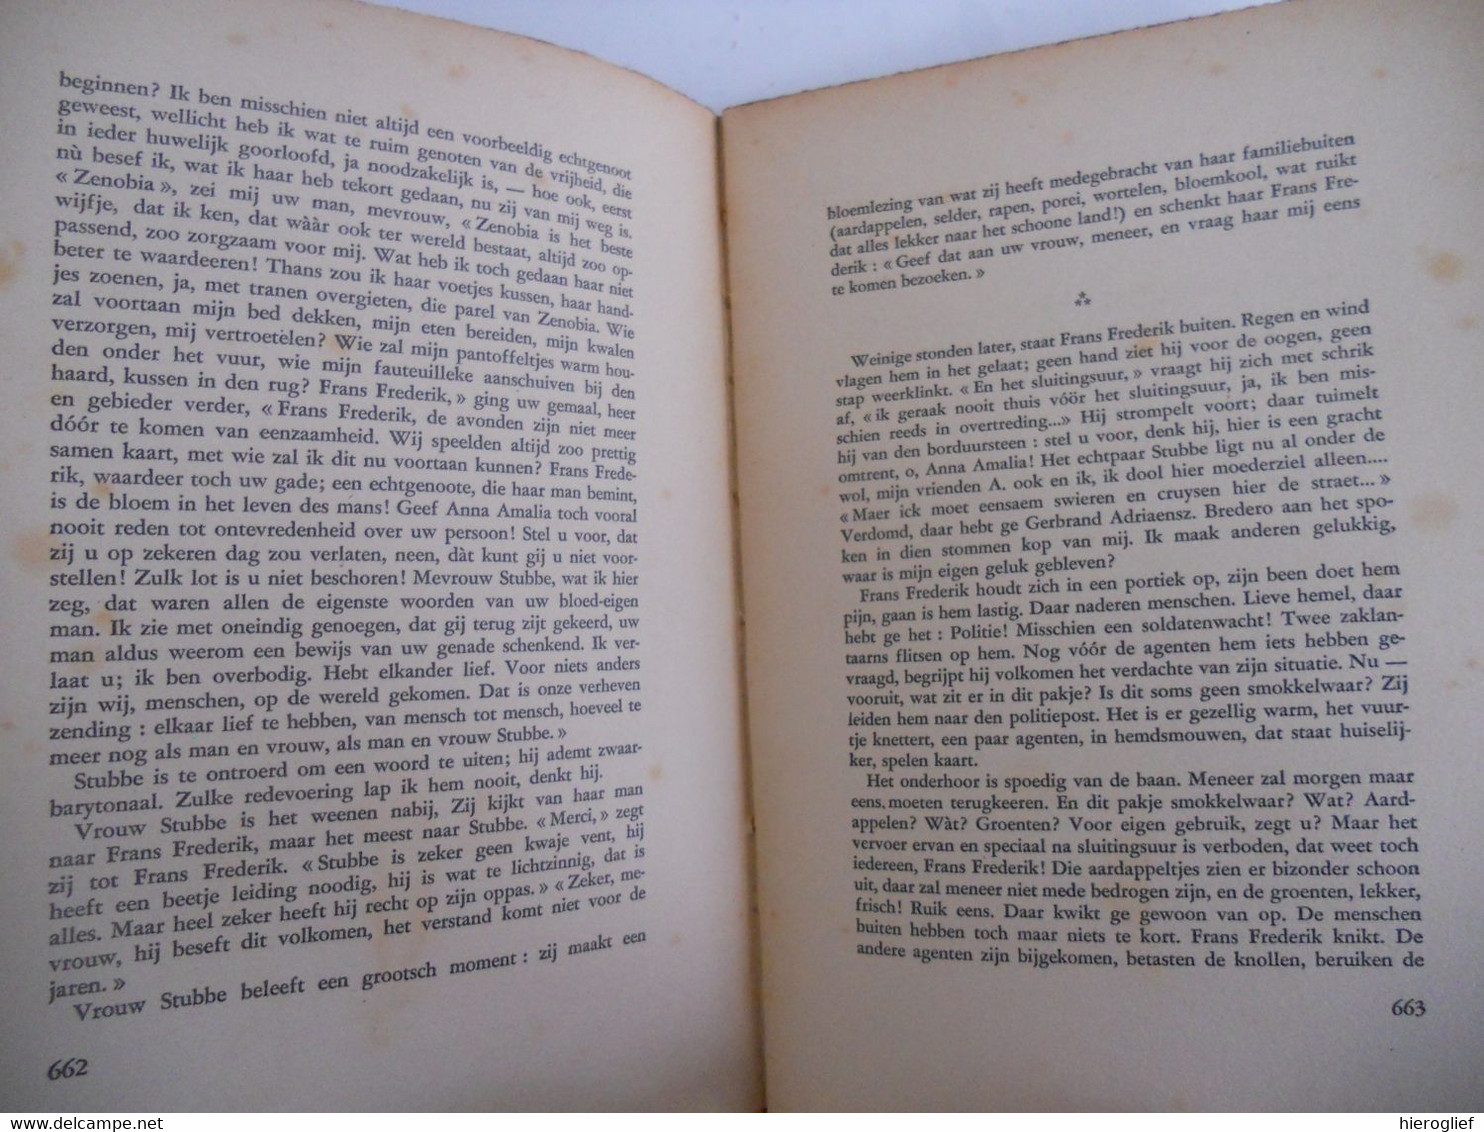 Dietsche Warande & Belfort 1941 Nr 12 Tijdschrift Voor Letterkunde En Geestesleven Minne Roelants Albe - Literatuur